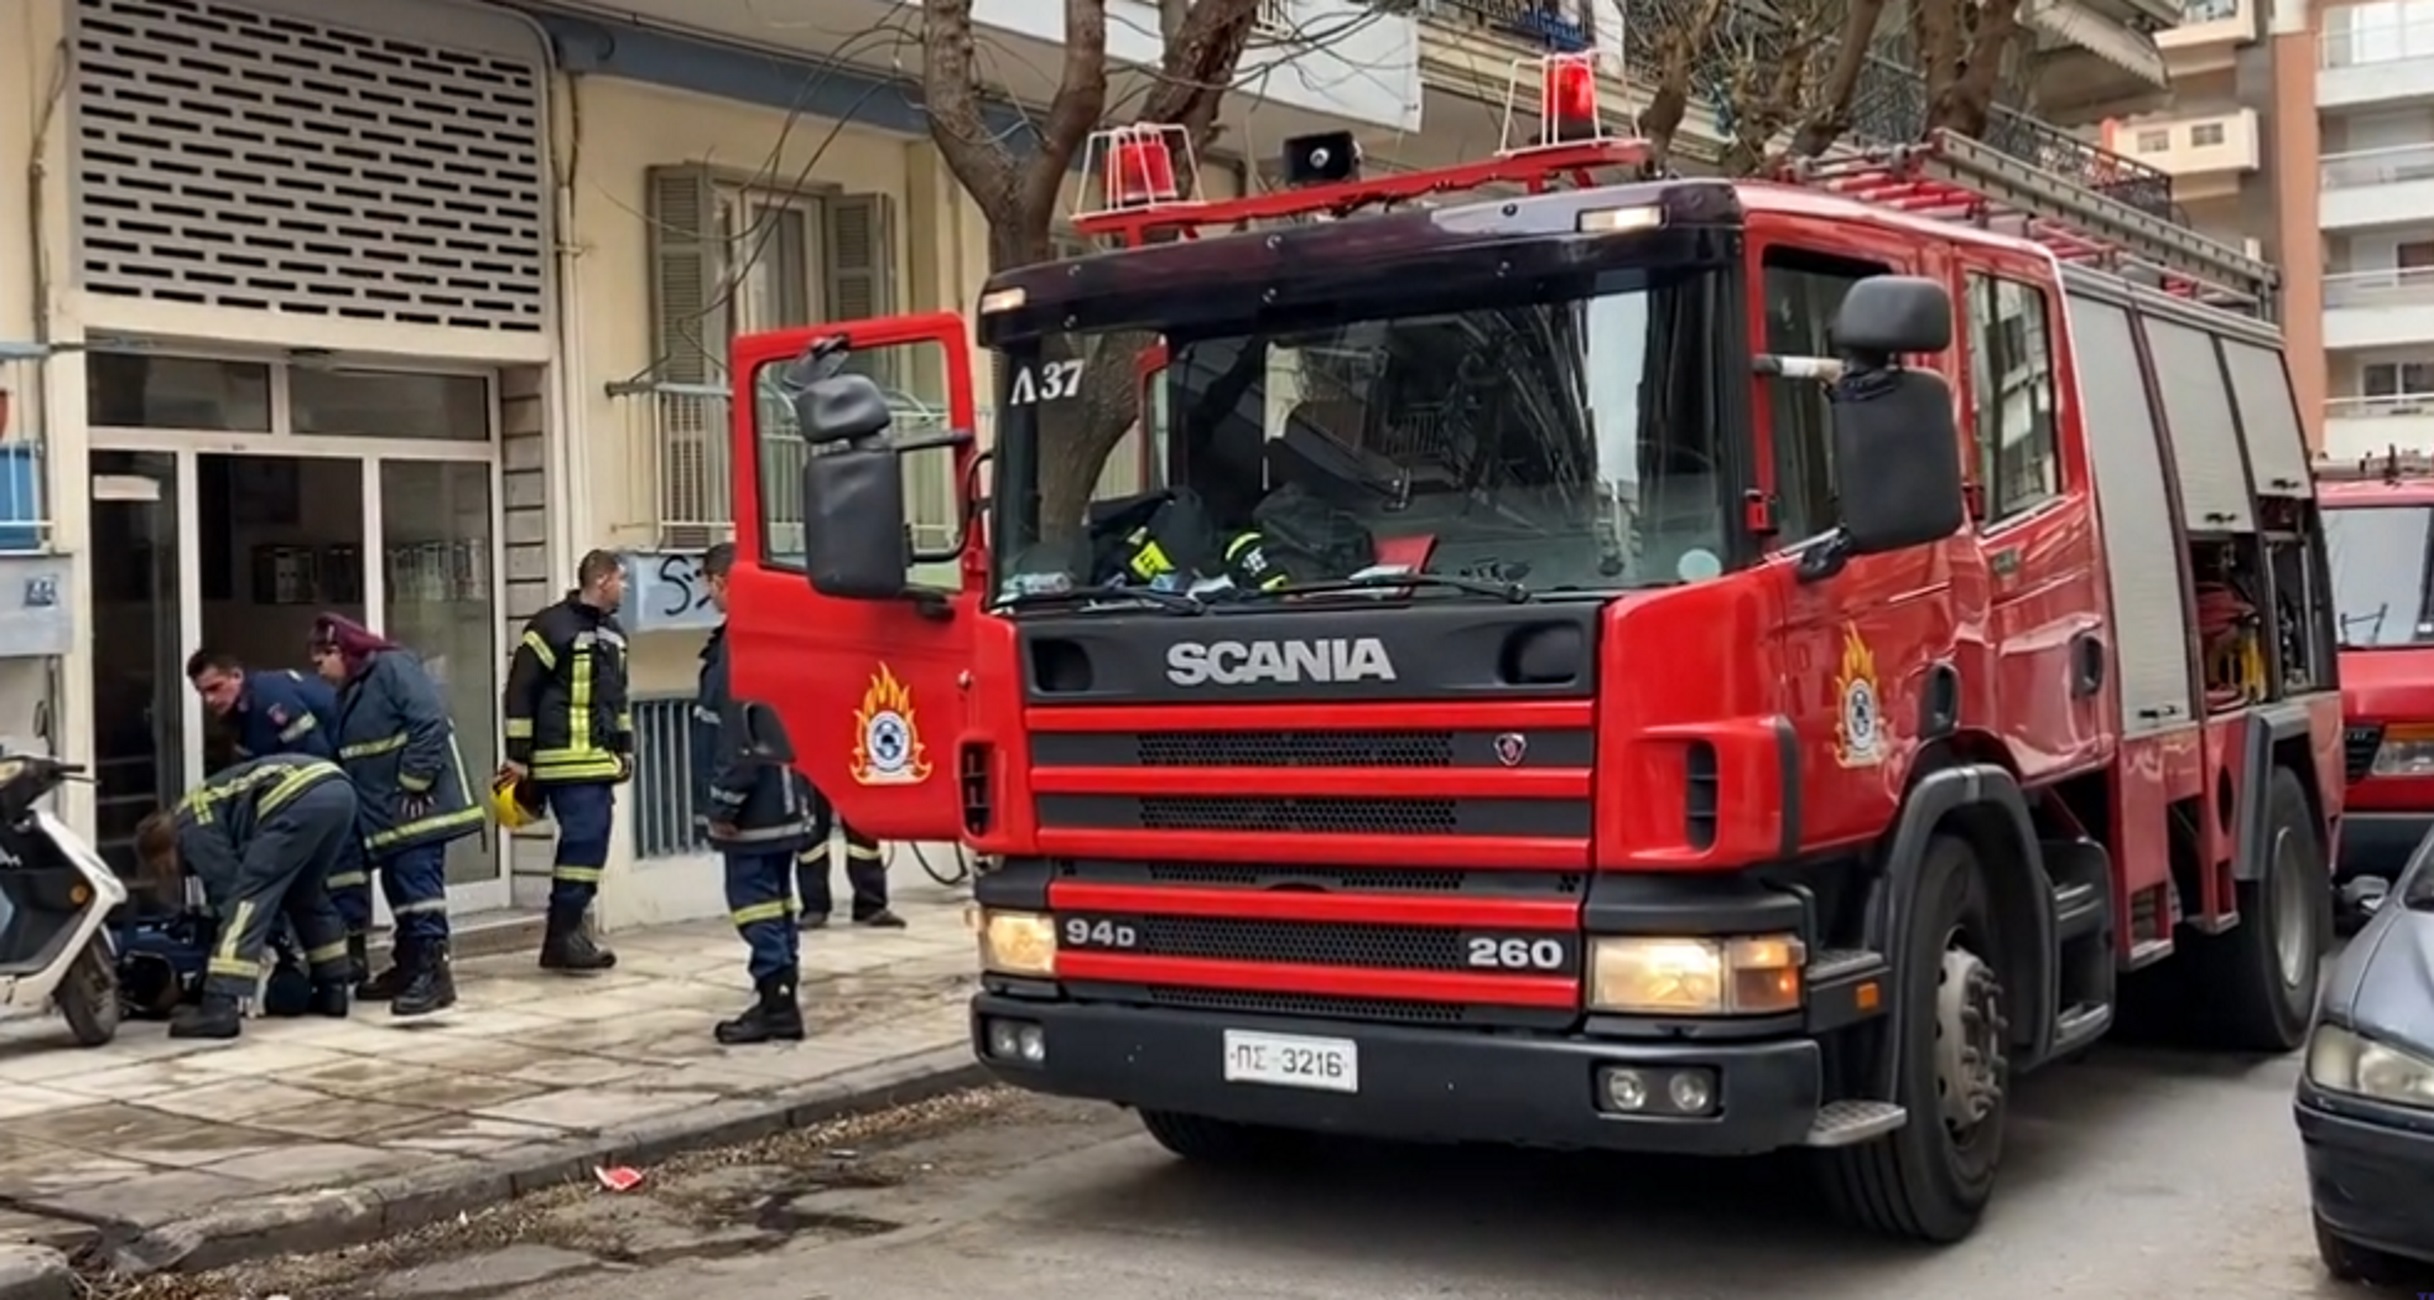 Θεσσαλονίκη: Ανασύρθηκε χωρίς τις αισθήσεις του 40χρονος μετά από φωτιά σε διαμέρισμα πολυκατοικίας